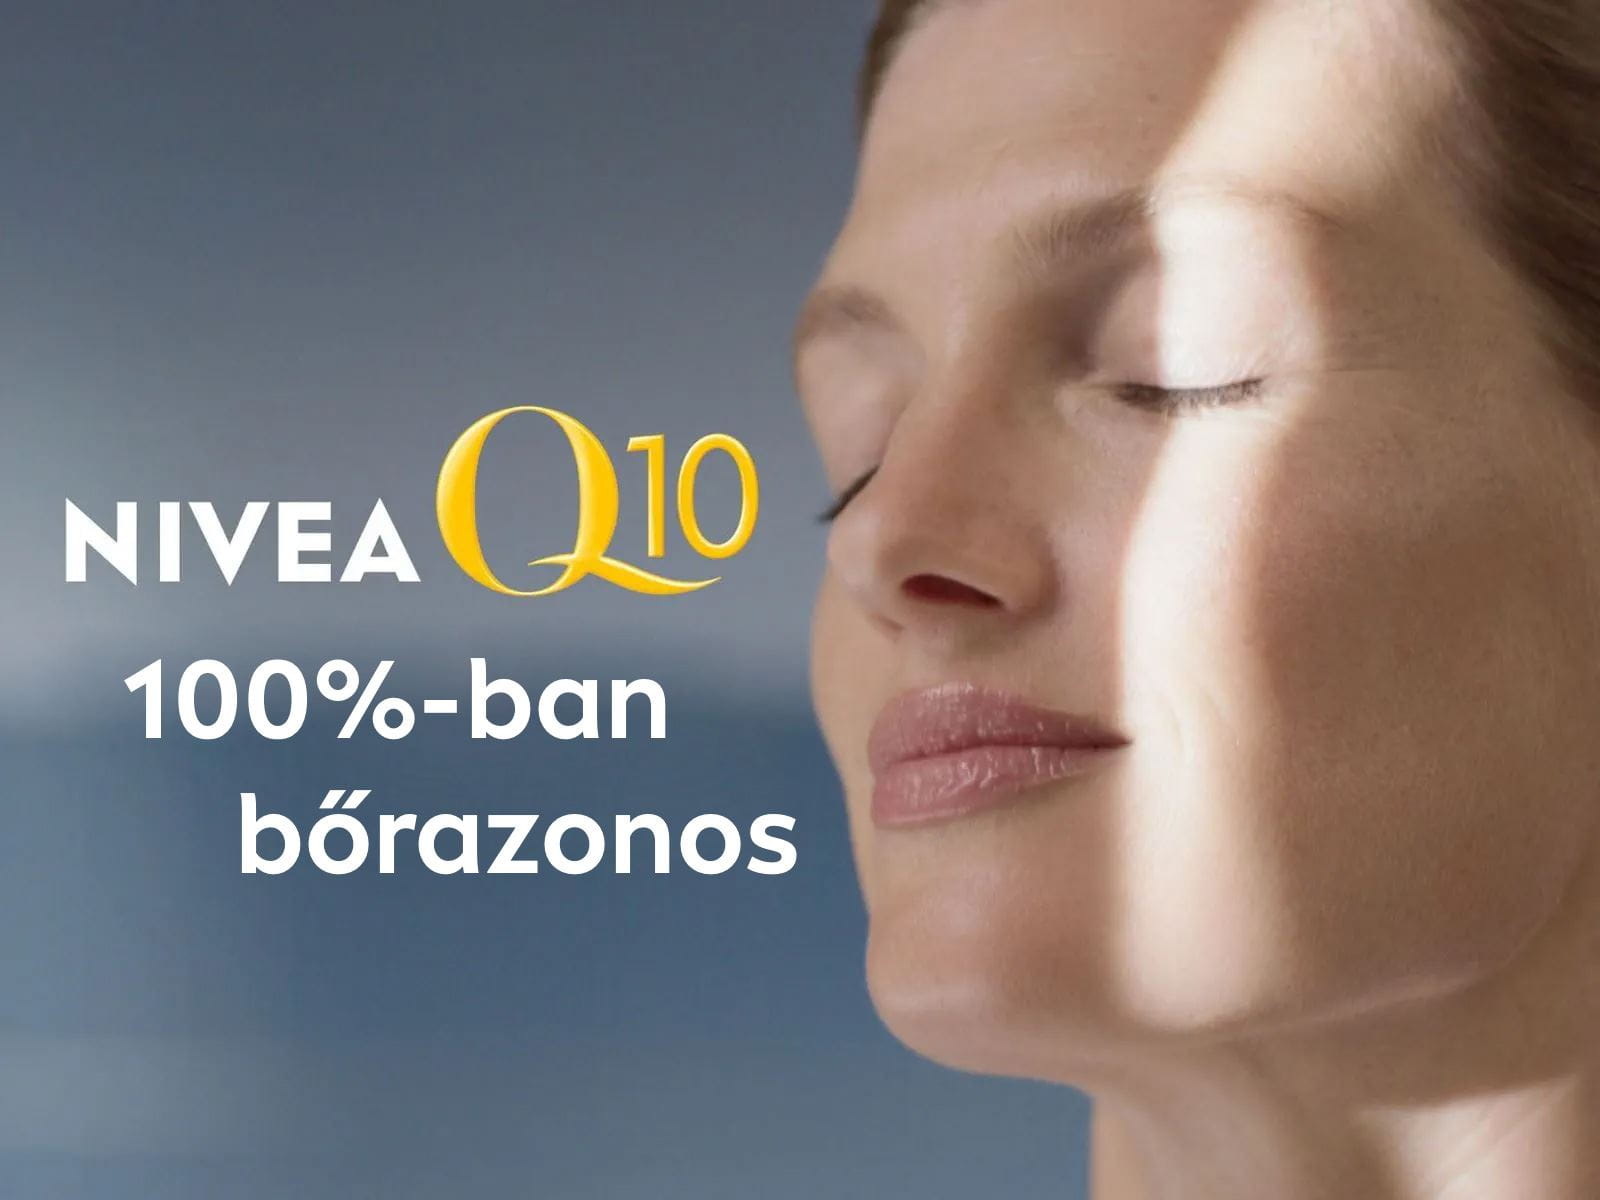 A NIVEA Q10 100%-ban bőrazonos